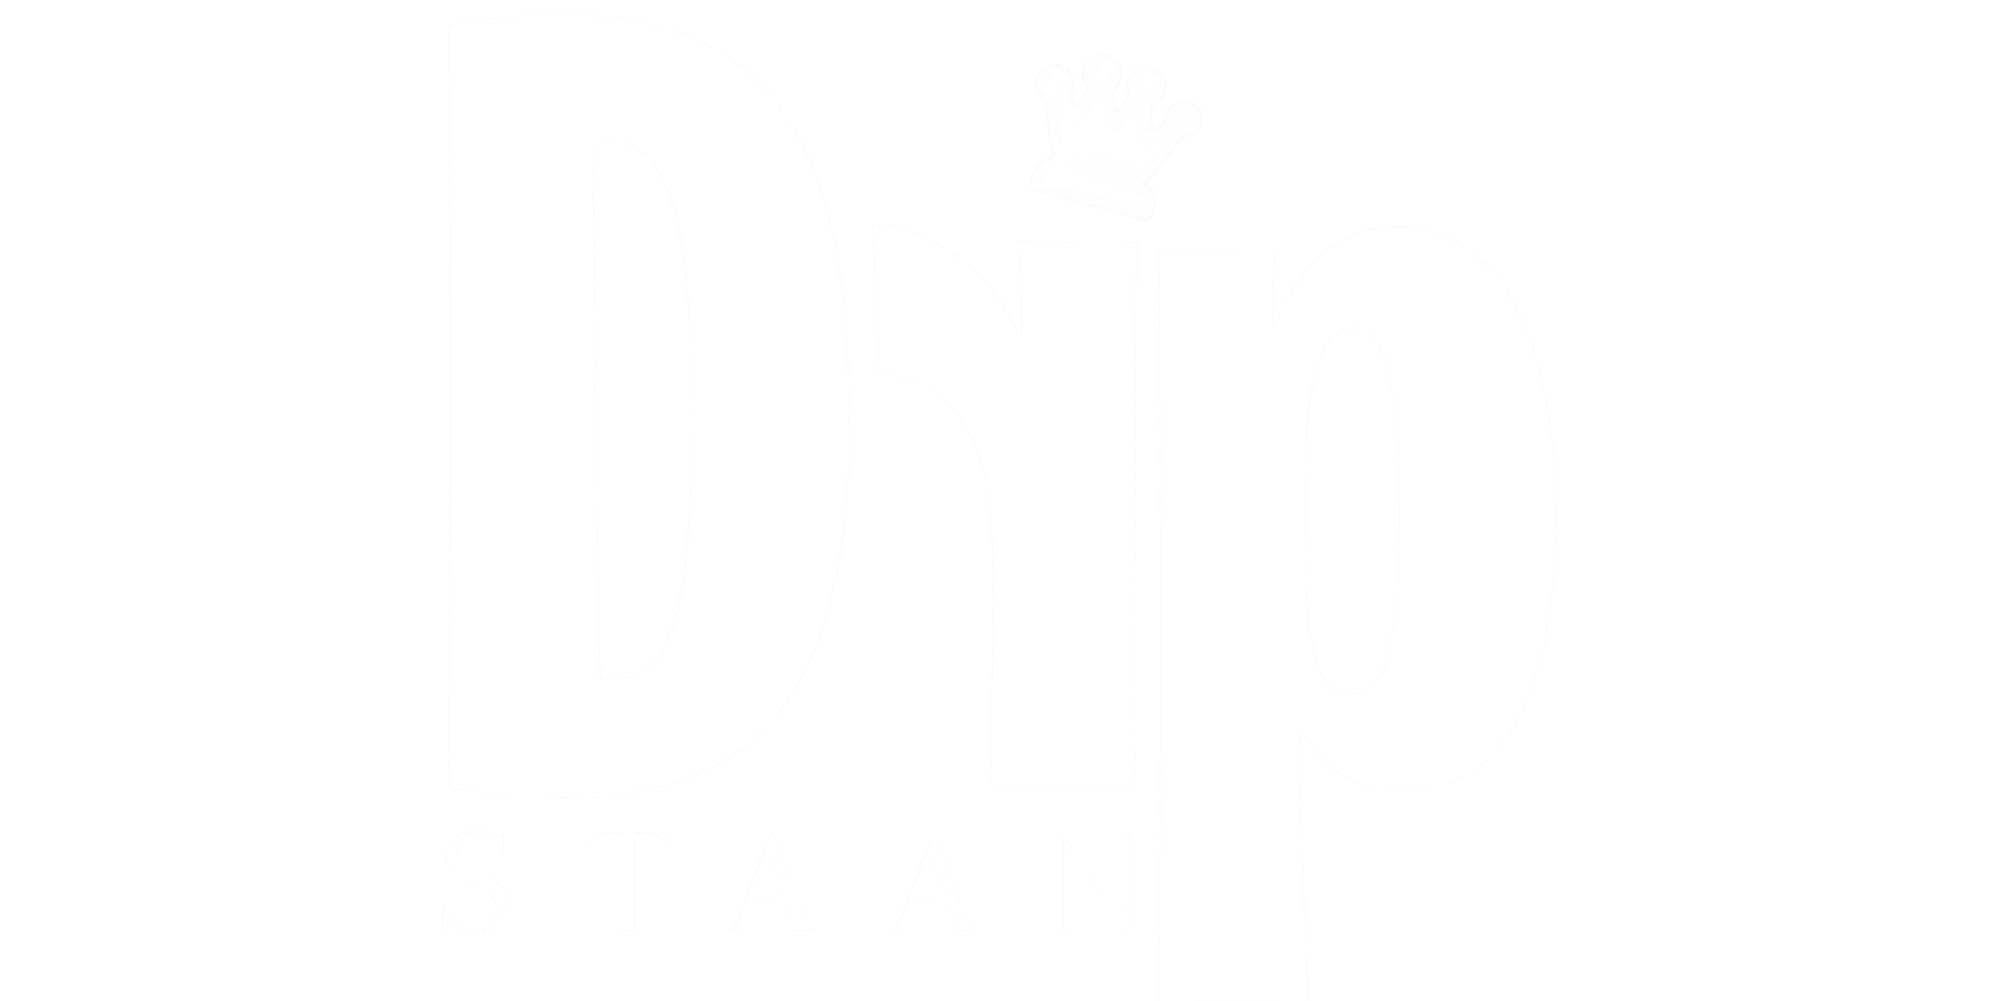 DripStaan